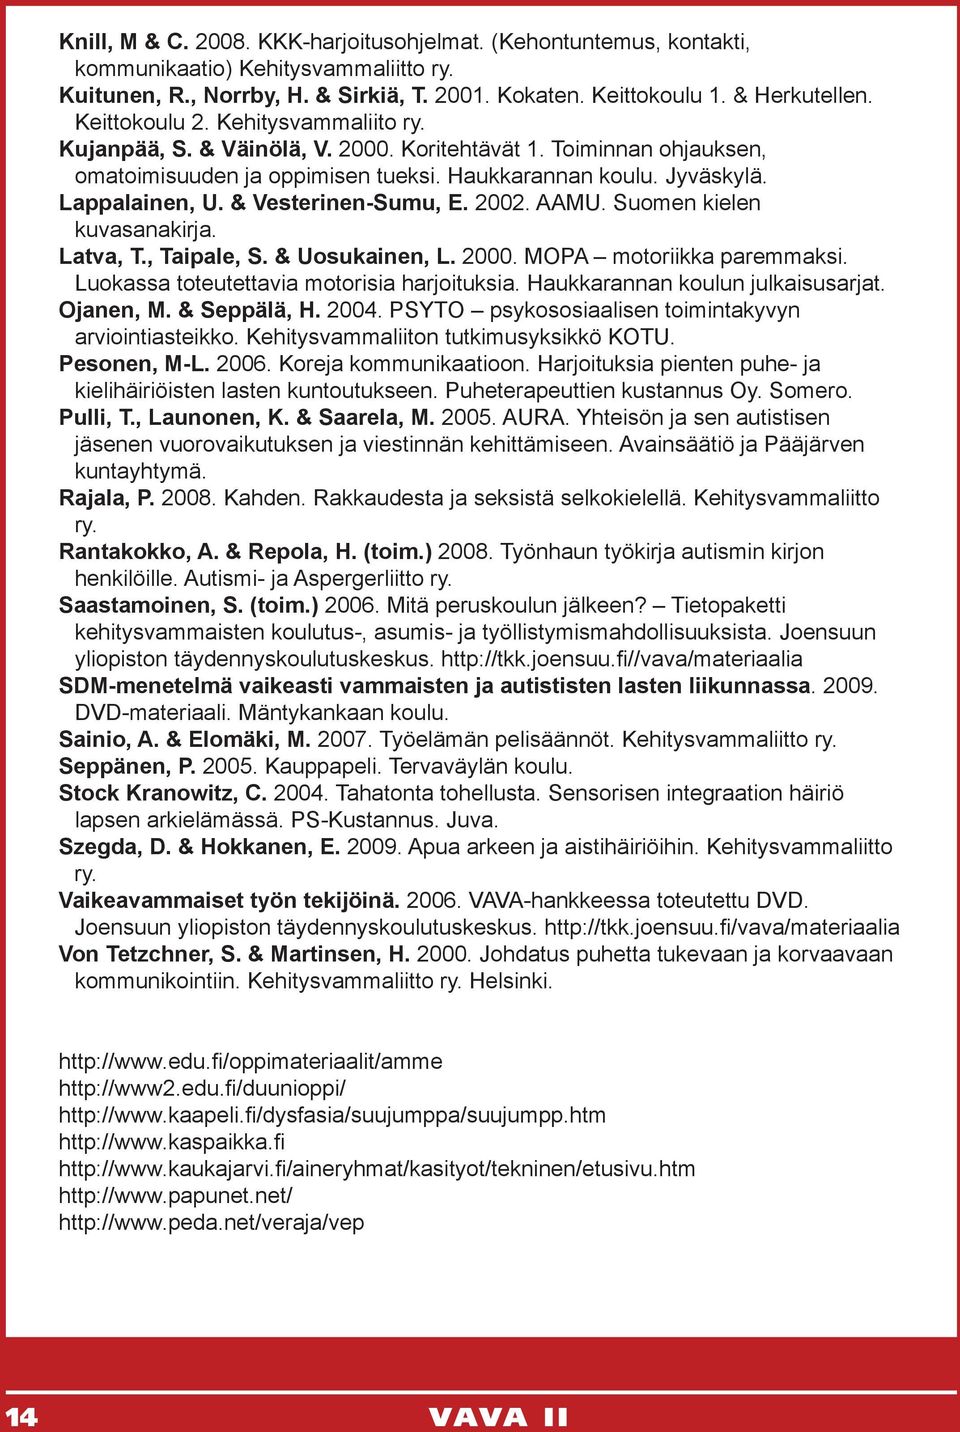 & Vesterinen-Sumu, E. 2002. AAMU. Suomen kielen kuvasanakirja. Latva, T., Taipale, S. & Uosukainen, L. 2000. MOPA motoriikka paremmaksi. Luokassa toteutettavia motorisia harjoituksia.